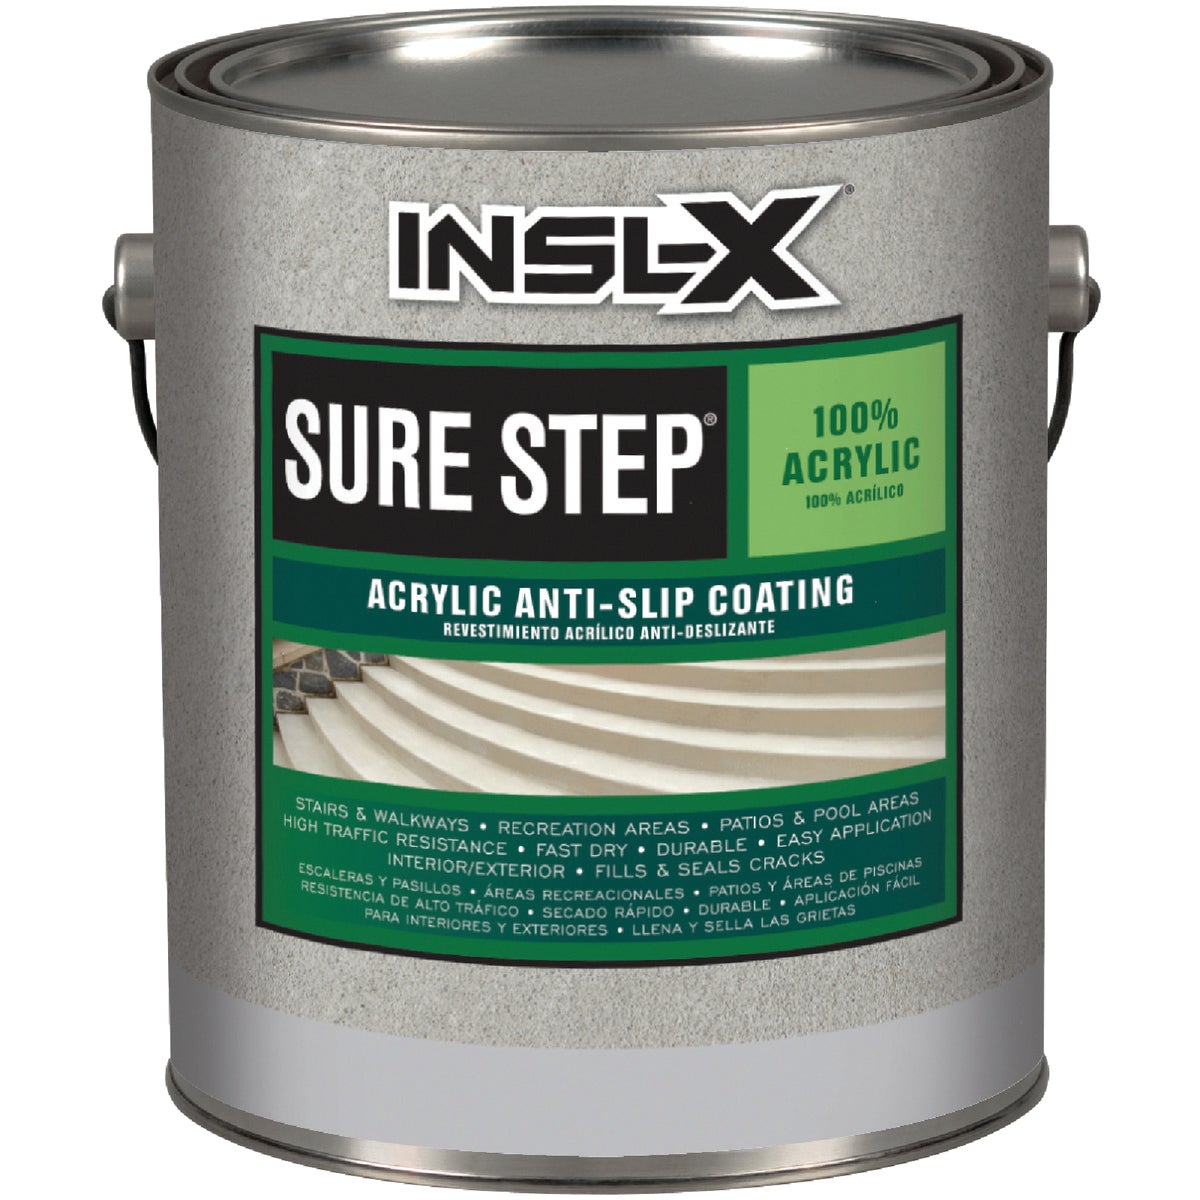 INSL-X Sure Step Sand Skid Resistant Concrete Paint, 1 Gal.